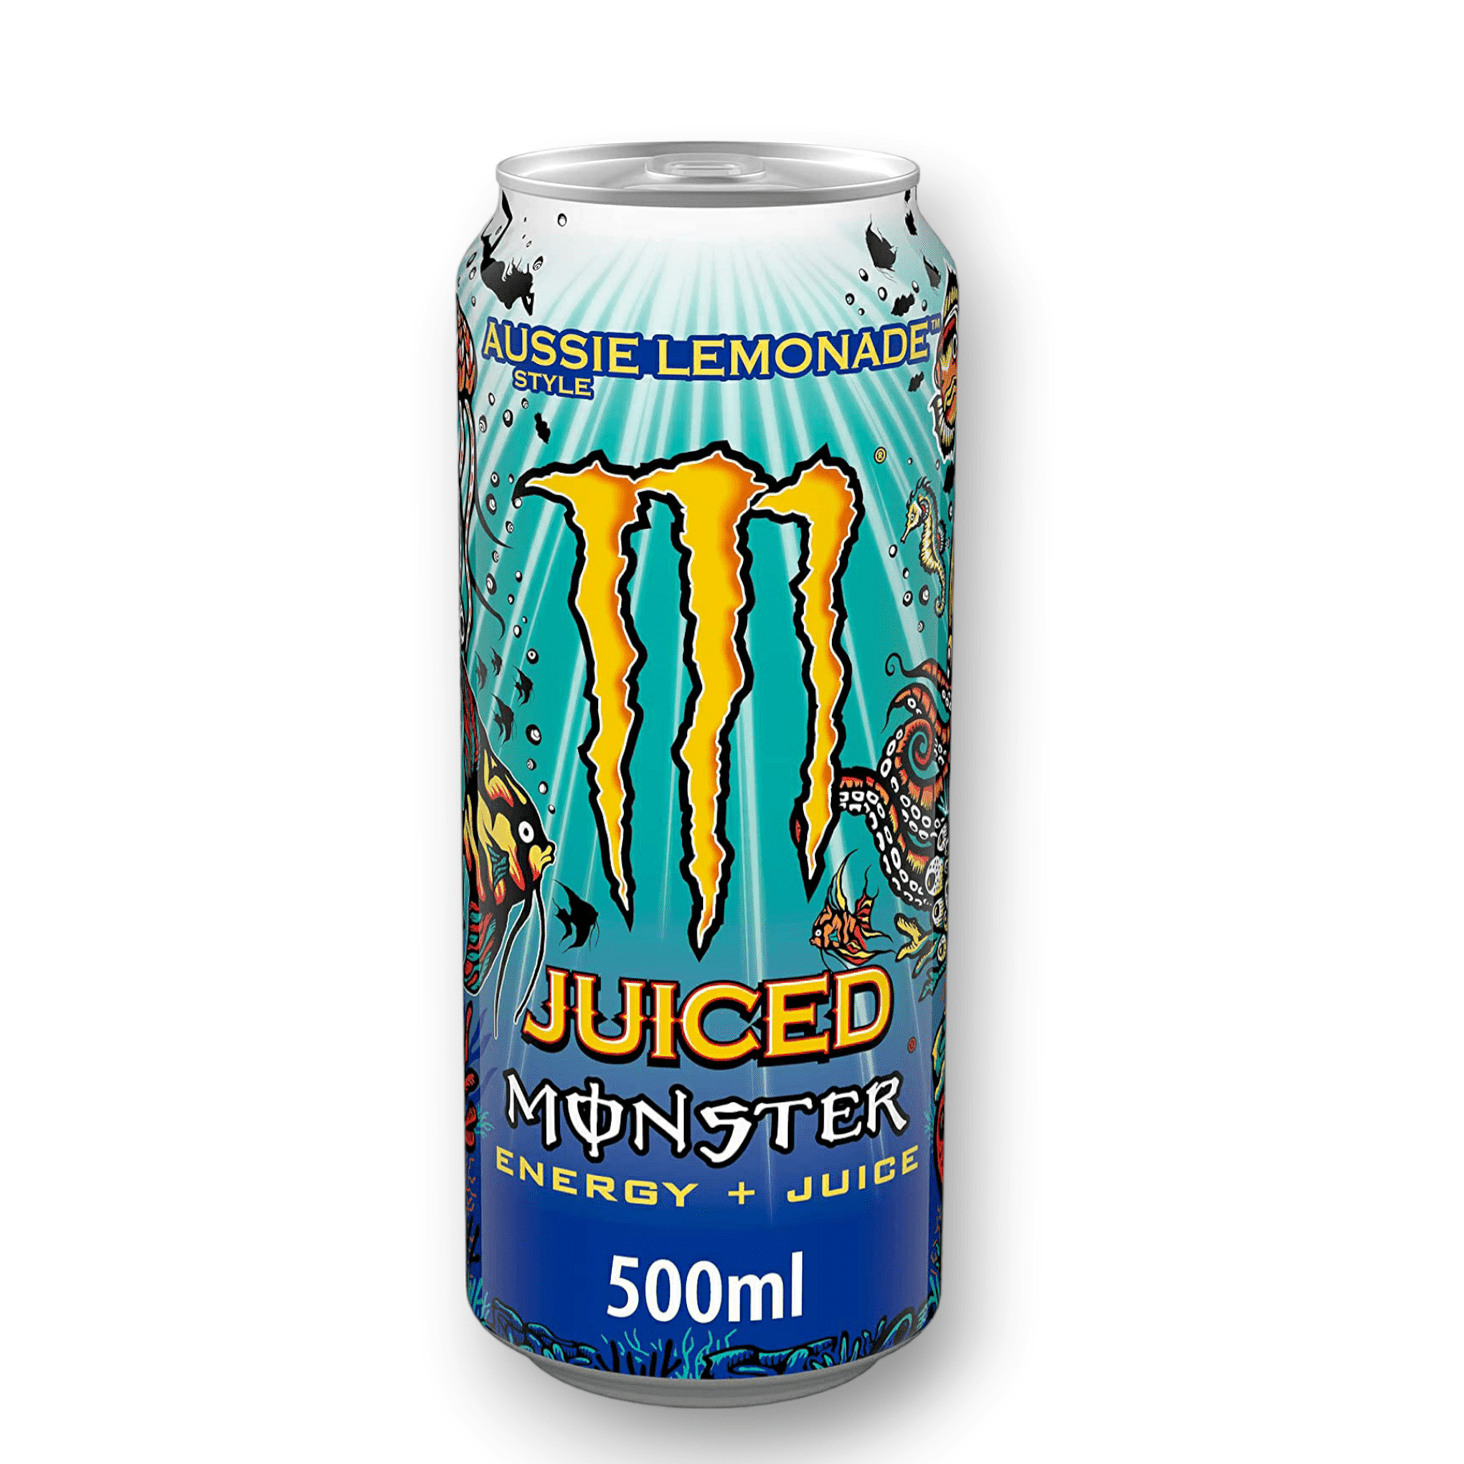 Monster Juice 0,5l- Aussie Style Lemonade - Energy + Juice - Exotische Limonade